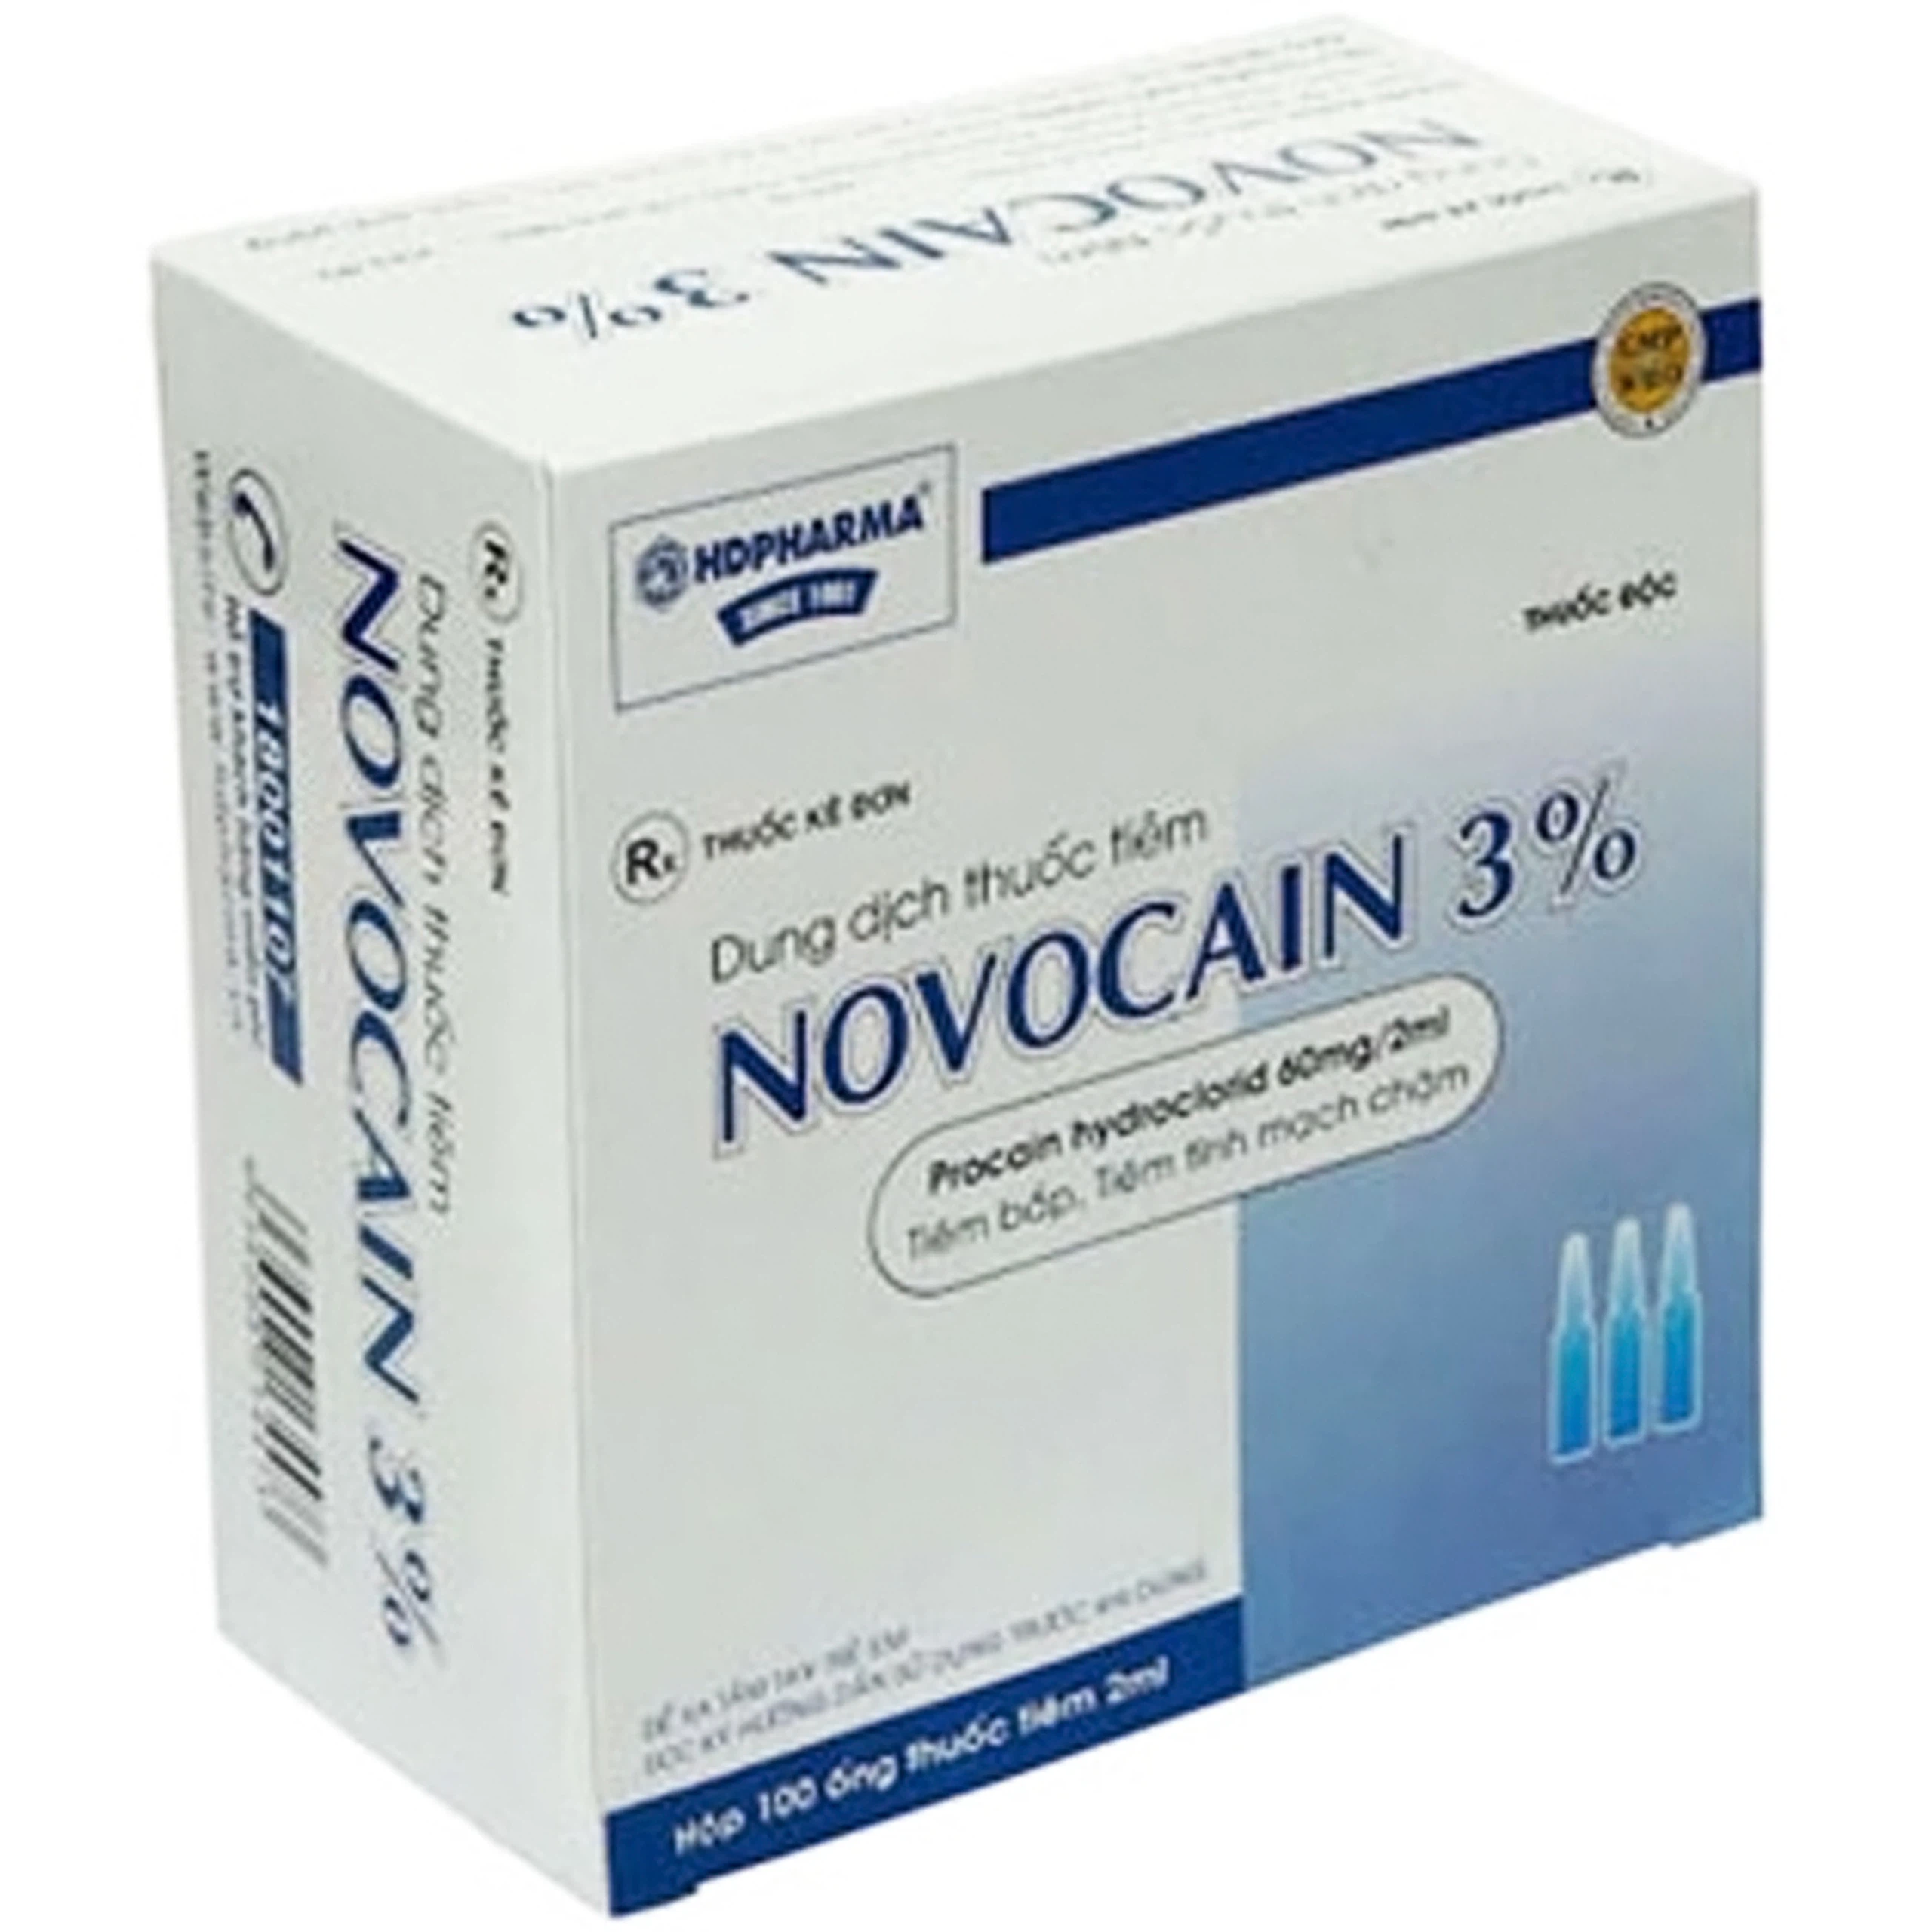 Dung dịch tiêm Novocain 3% HDpharma gây tê tại chỗ, gây tê cột sống (100 ống x 2ml)